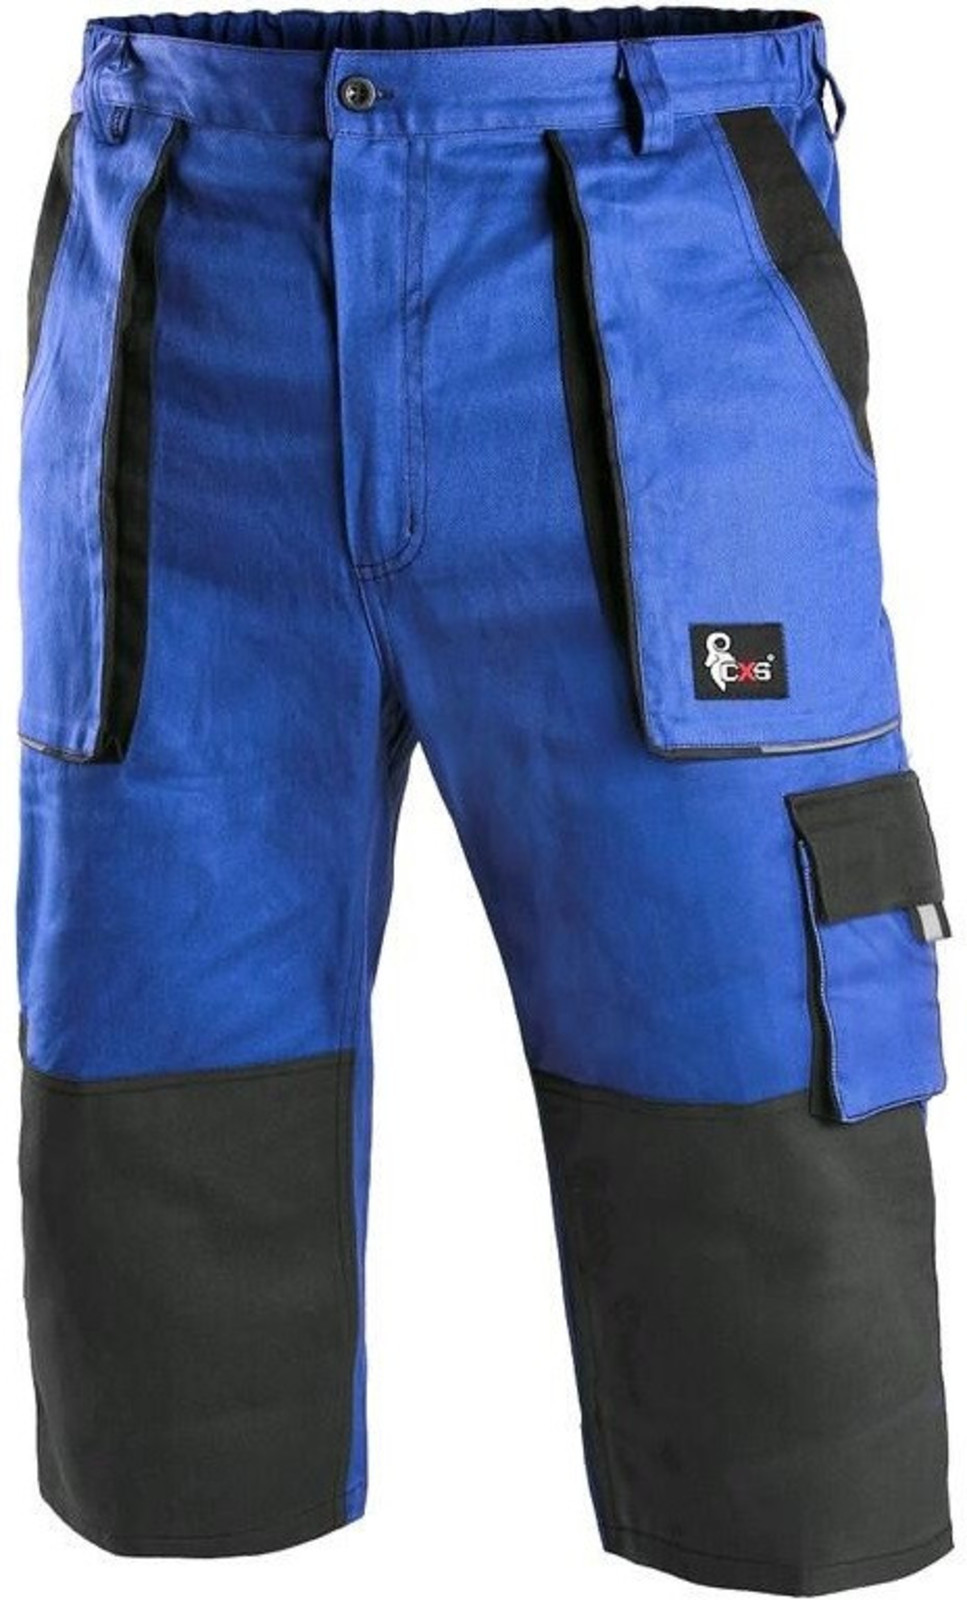 Pánske montérkové 3/4 nohavice CXS Luxy Patrik - veľkosť: 52, farba: modrá/čierna